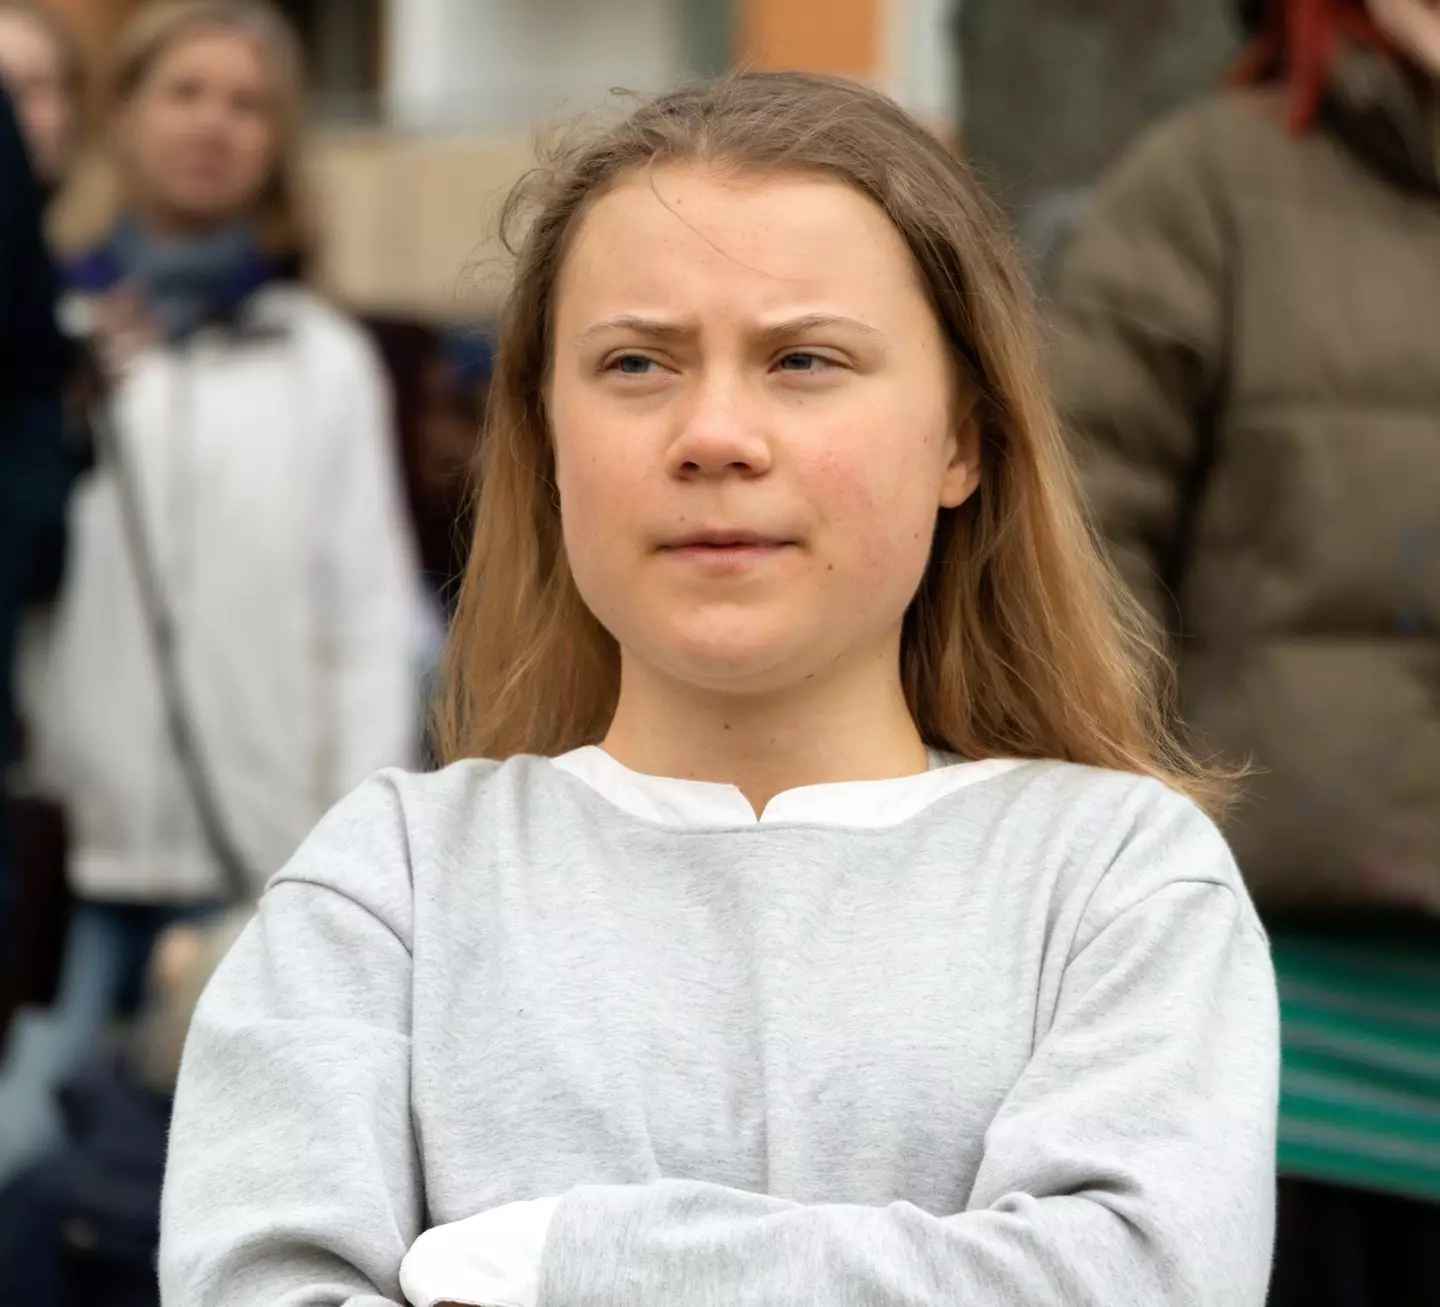 Greta Thunberg fired savage tweets back at Tate.